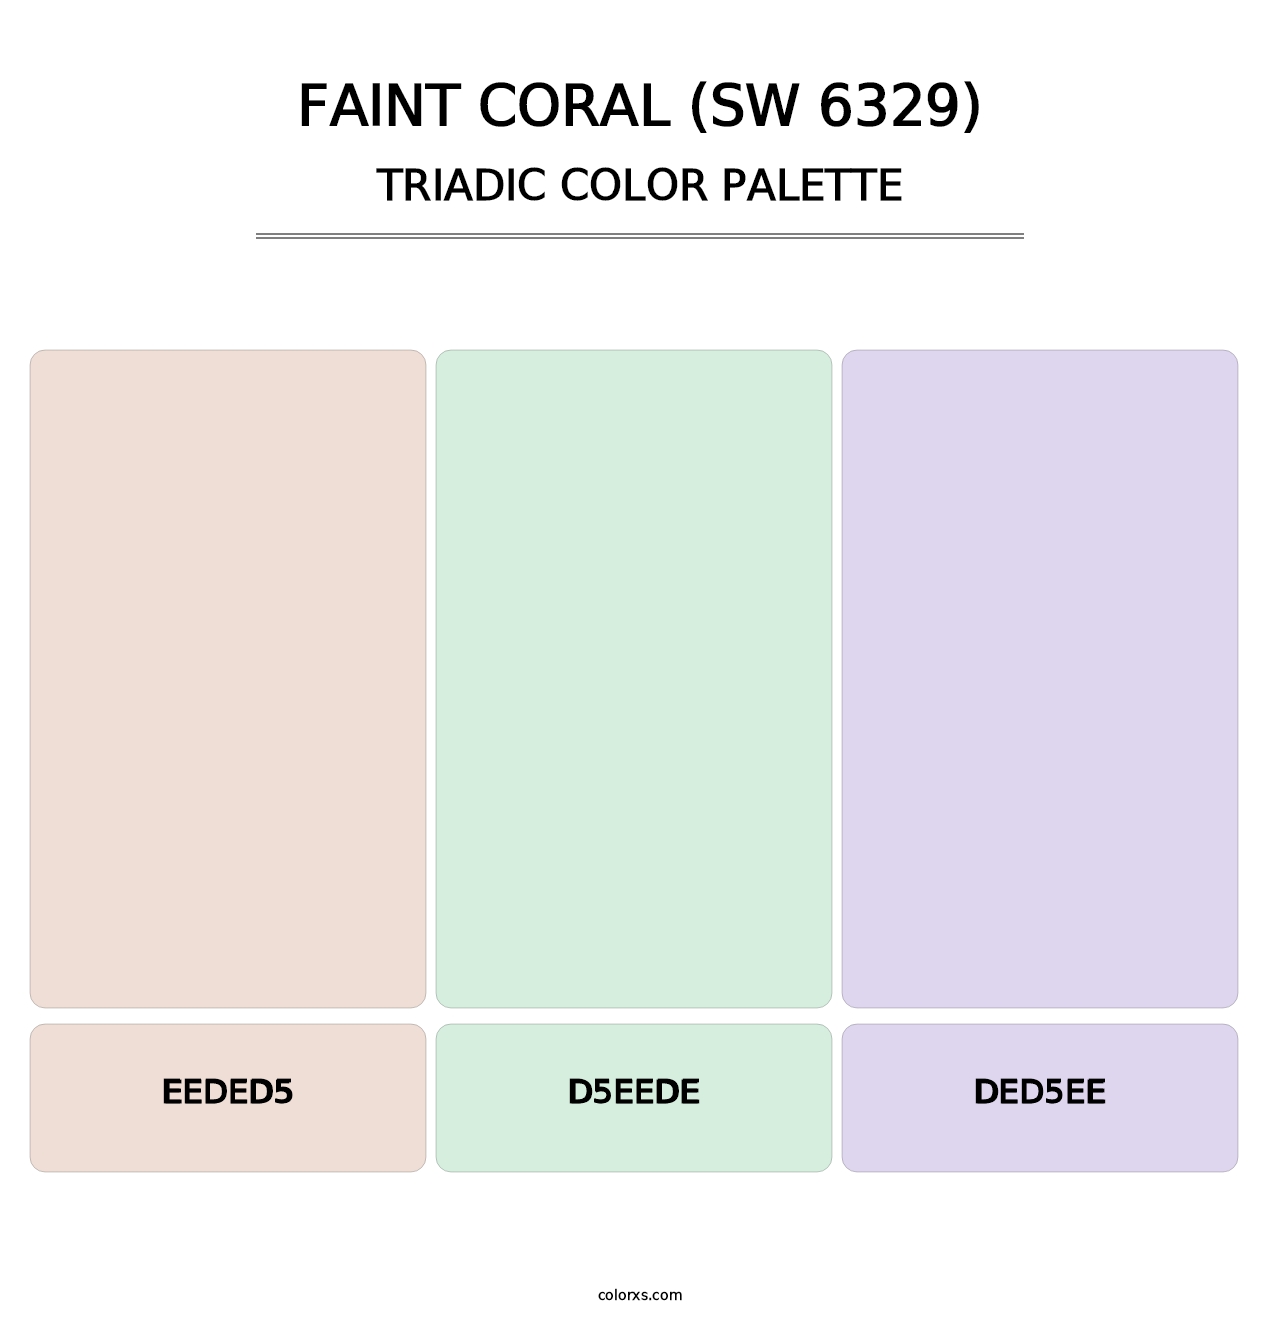 Faint Coral (SW 6329) - Triadic Color Palette